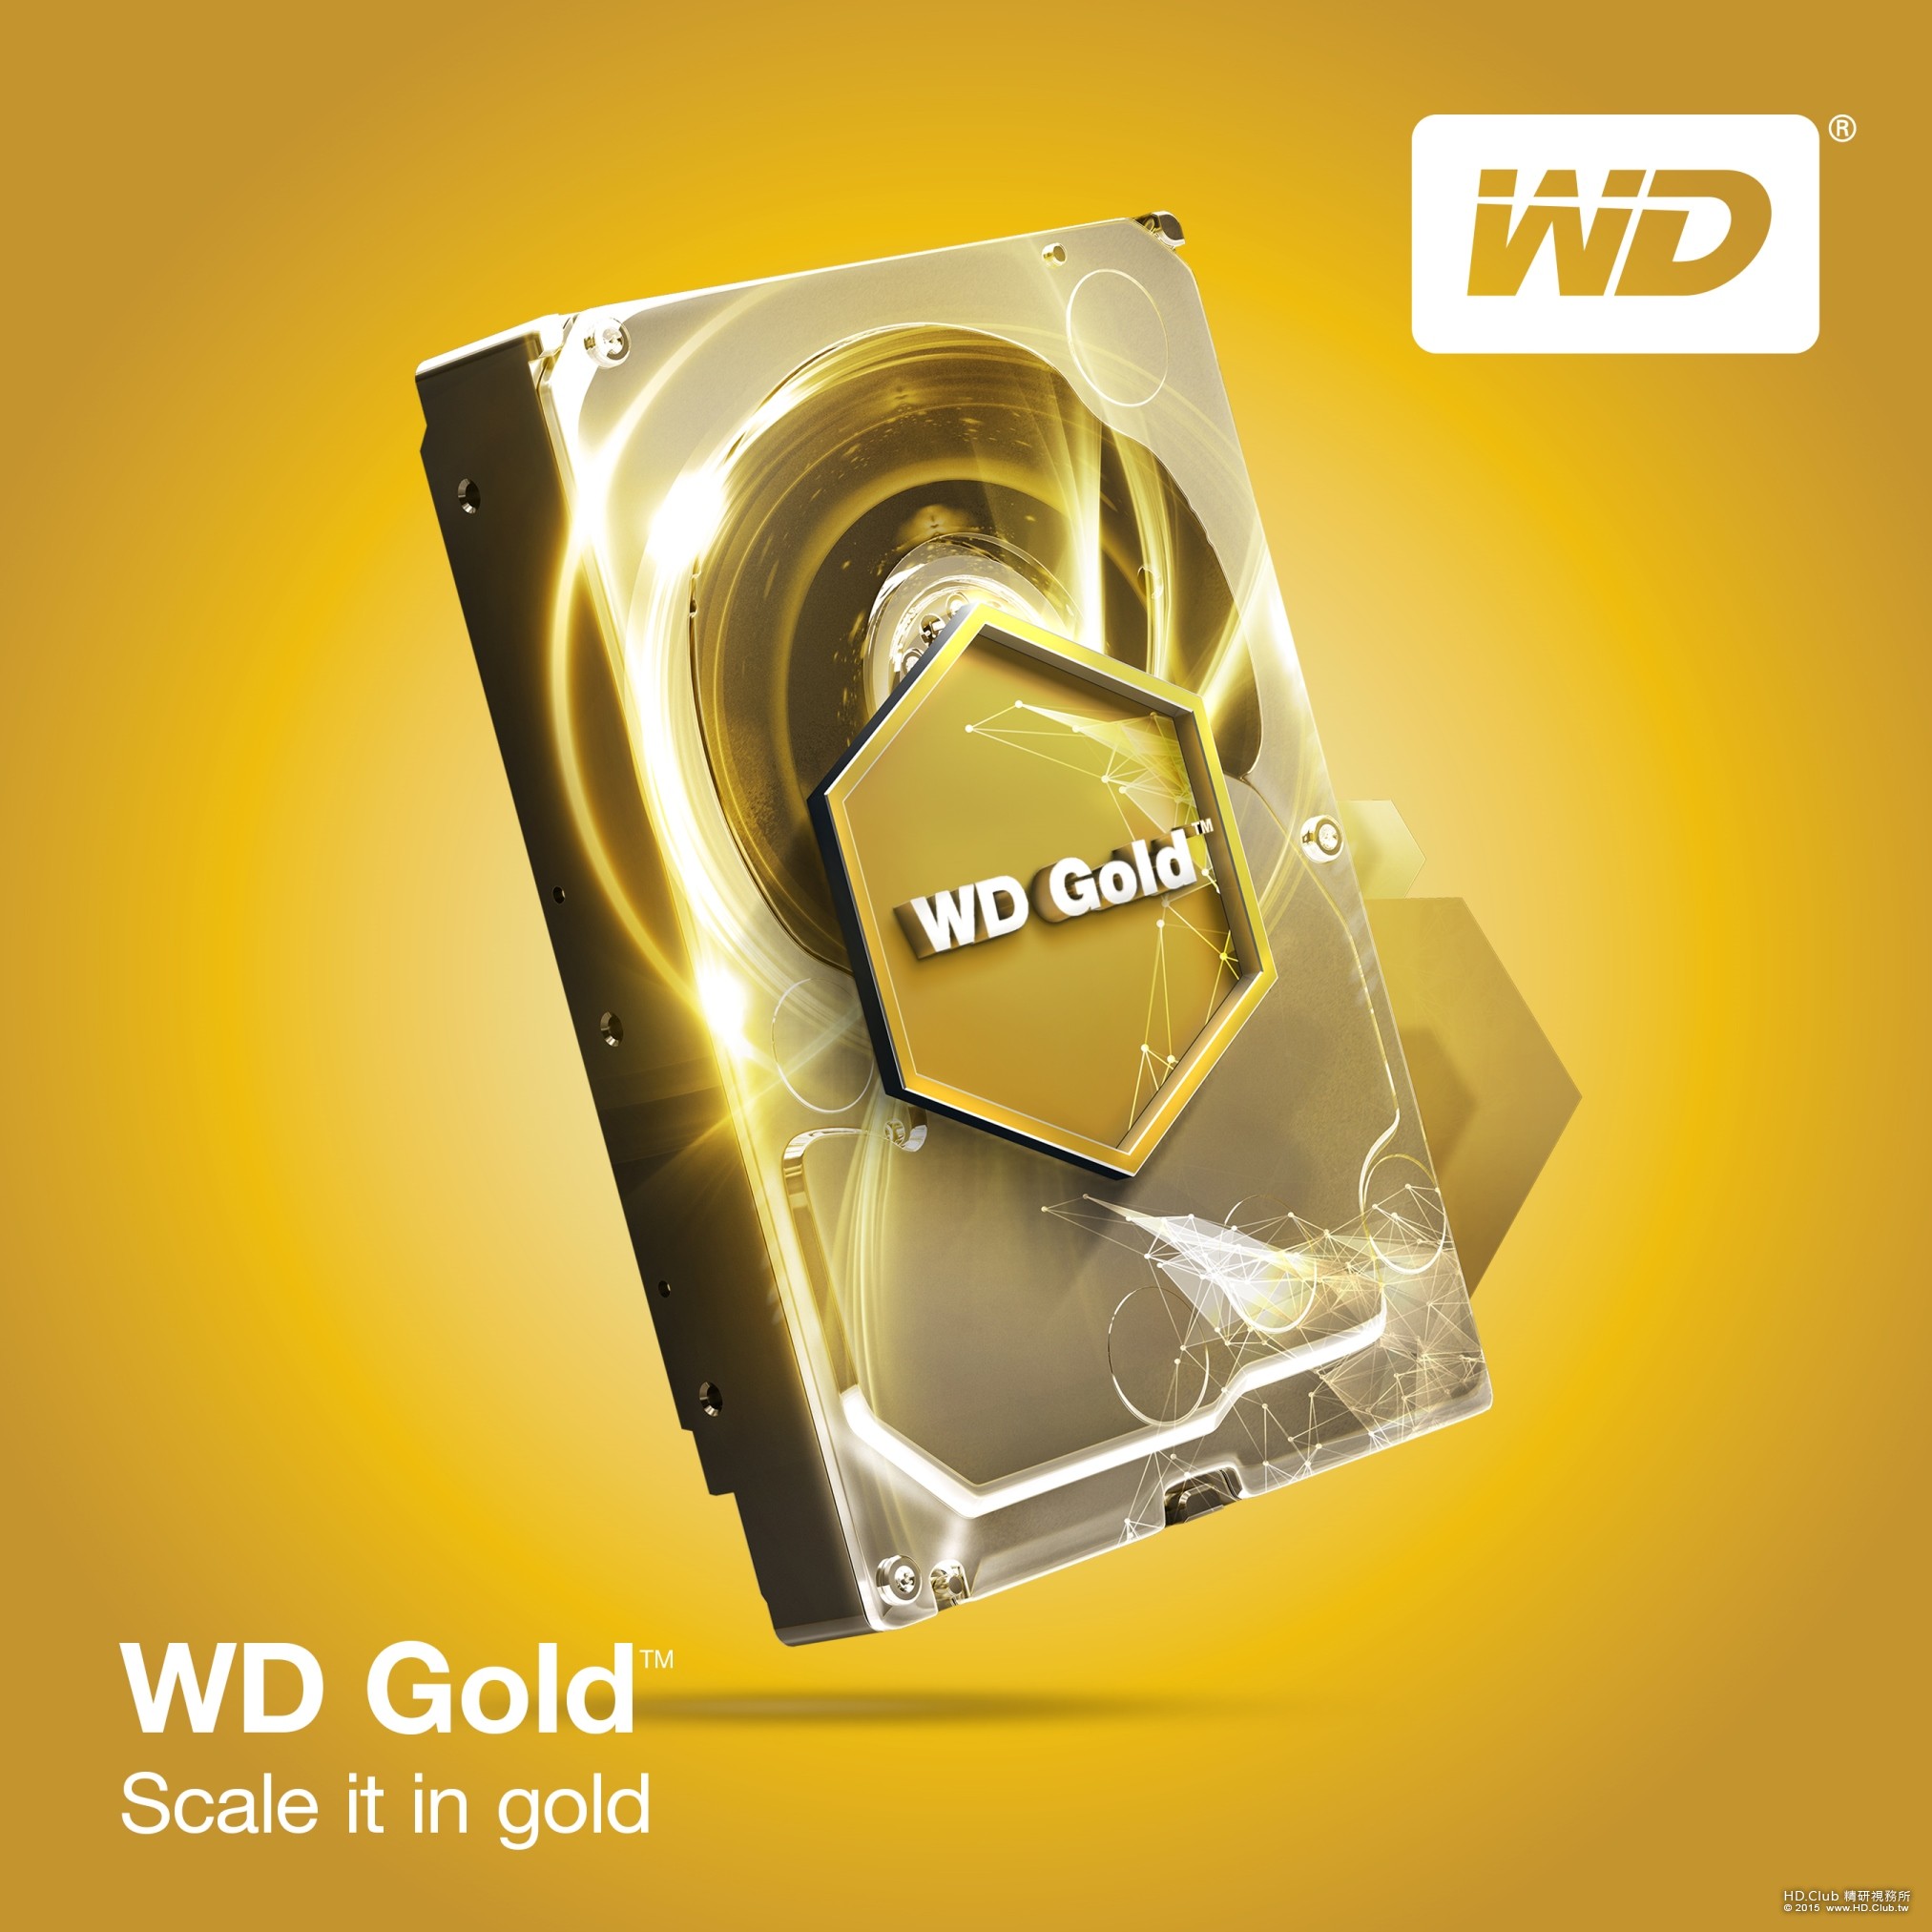 【產品相關照】Western Digital 推出 WD Gold 硬碟強化資料中心產品線.jpg